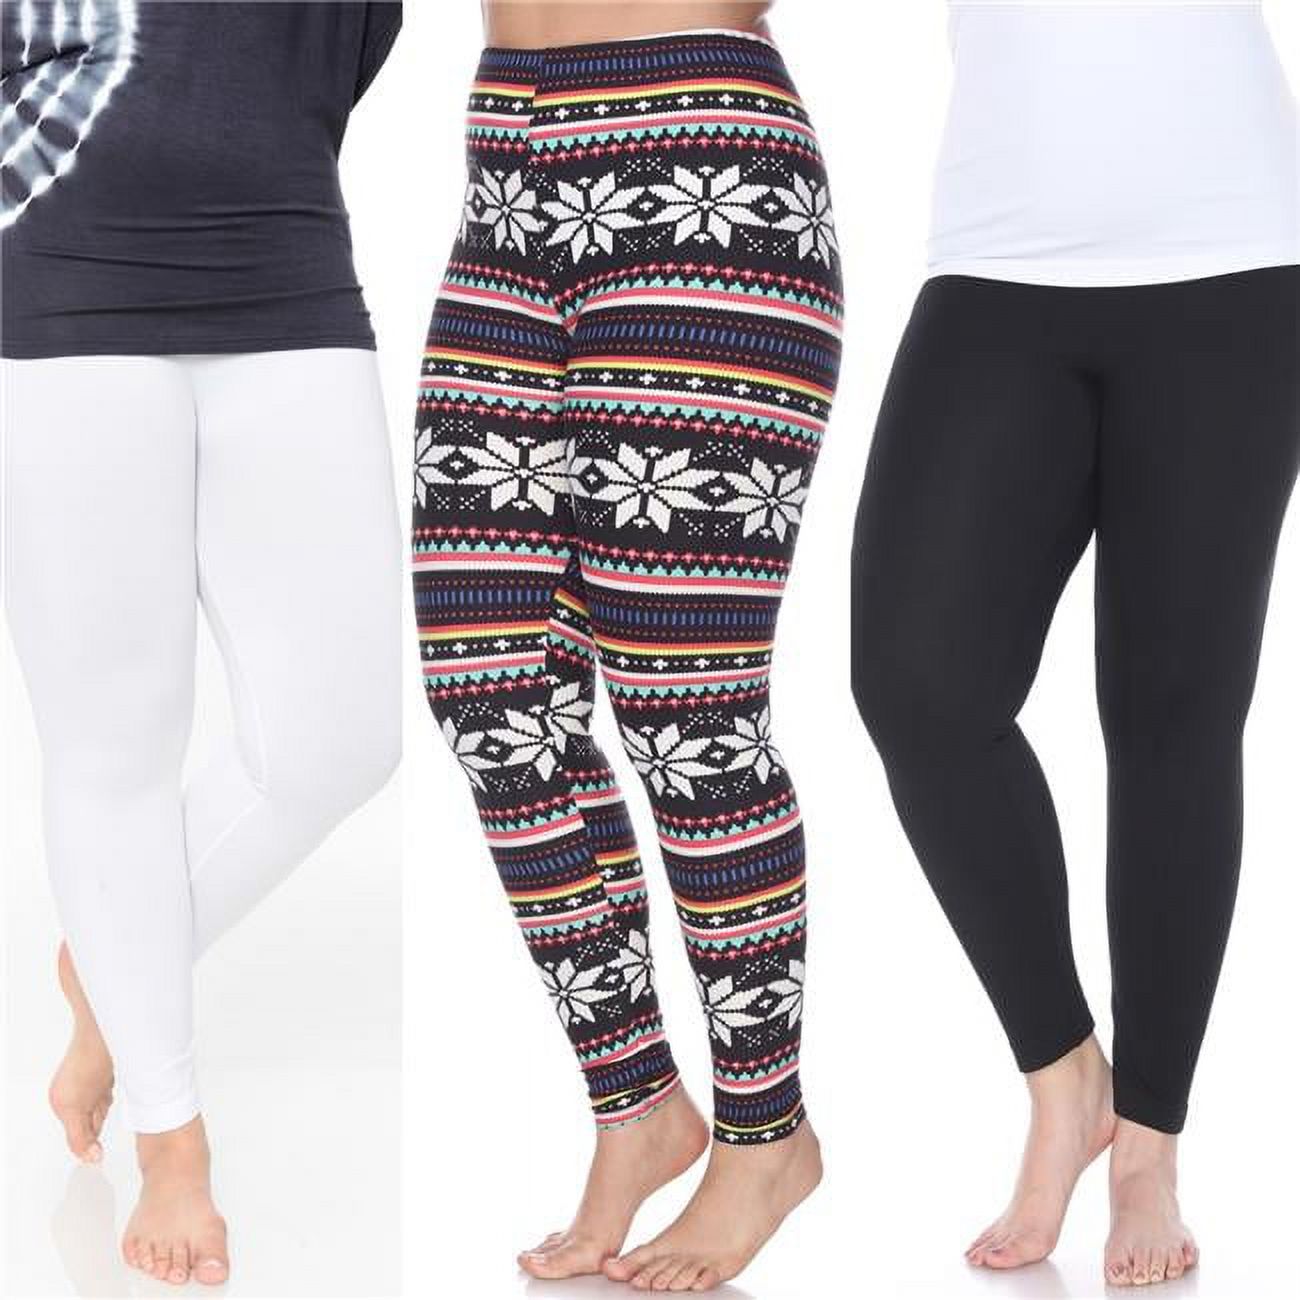 White Mark  Women Plus Size Leggings - Pack of 3, Black - image 1 of 6